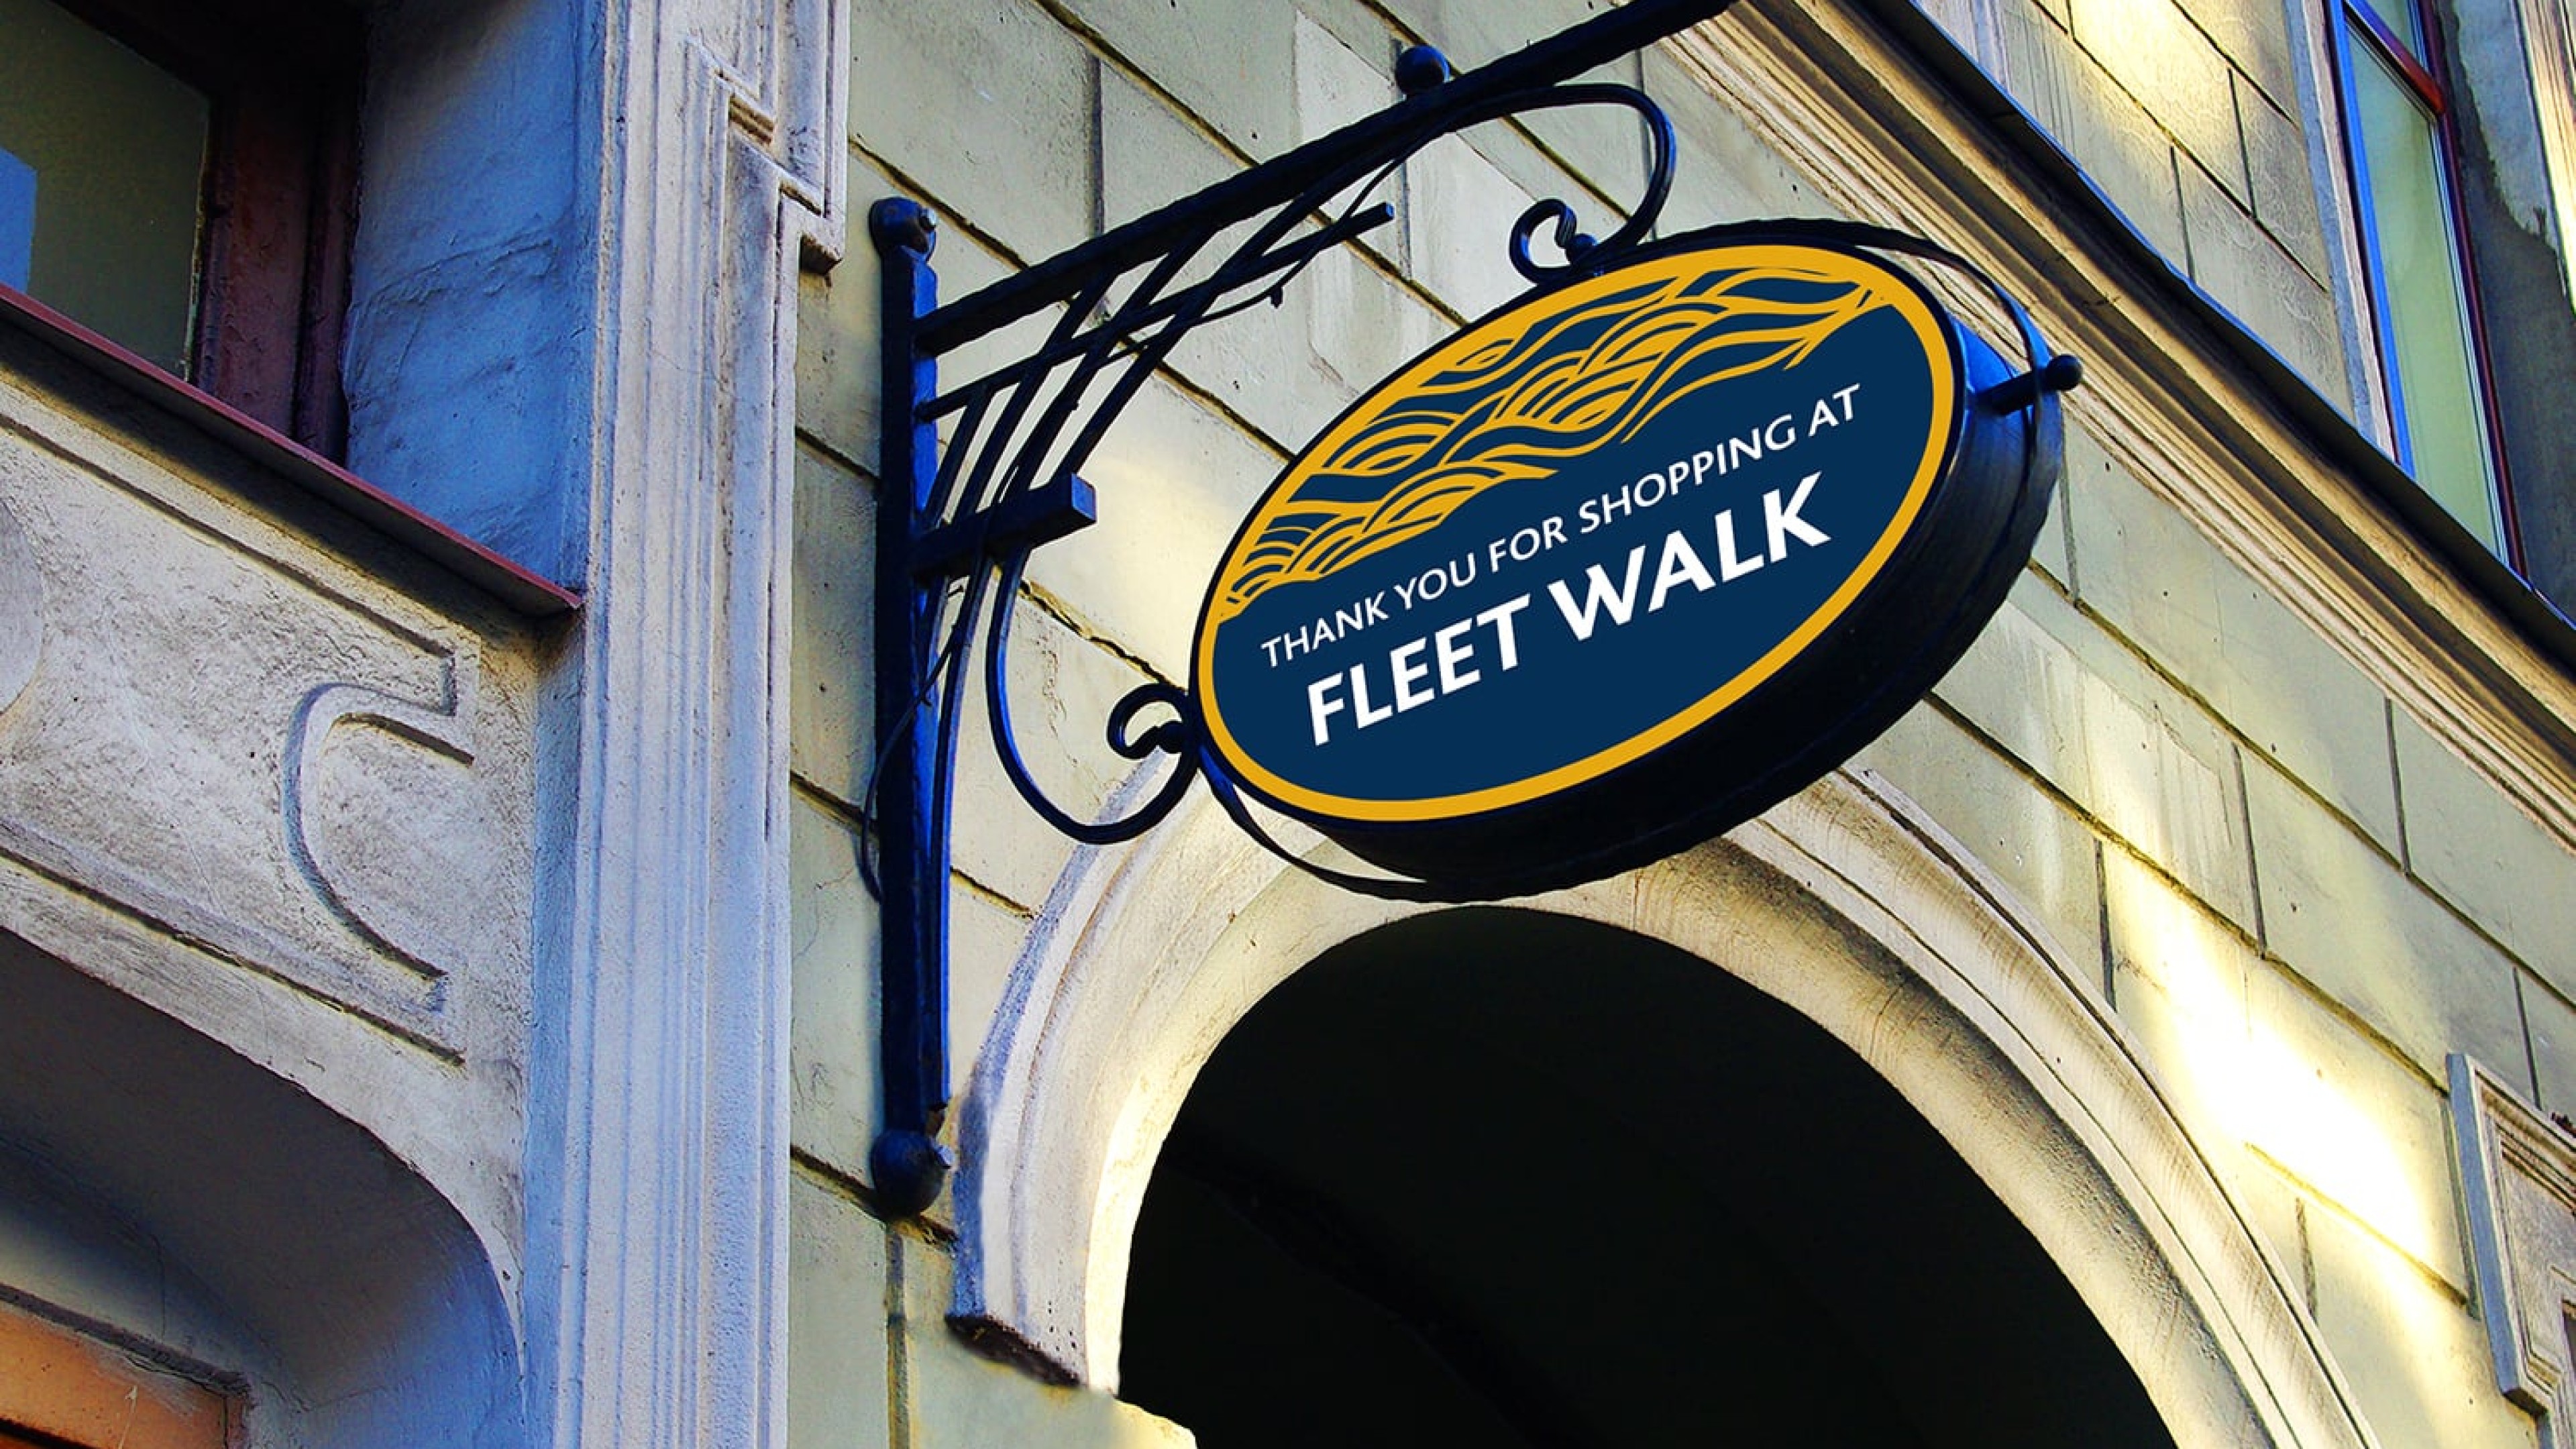 Fleet walk